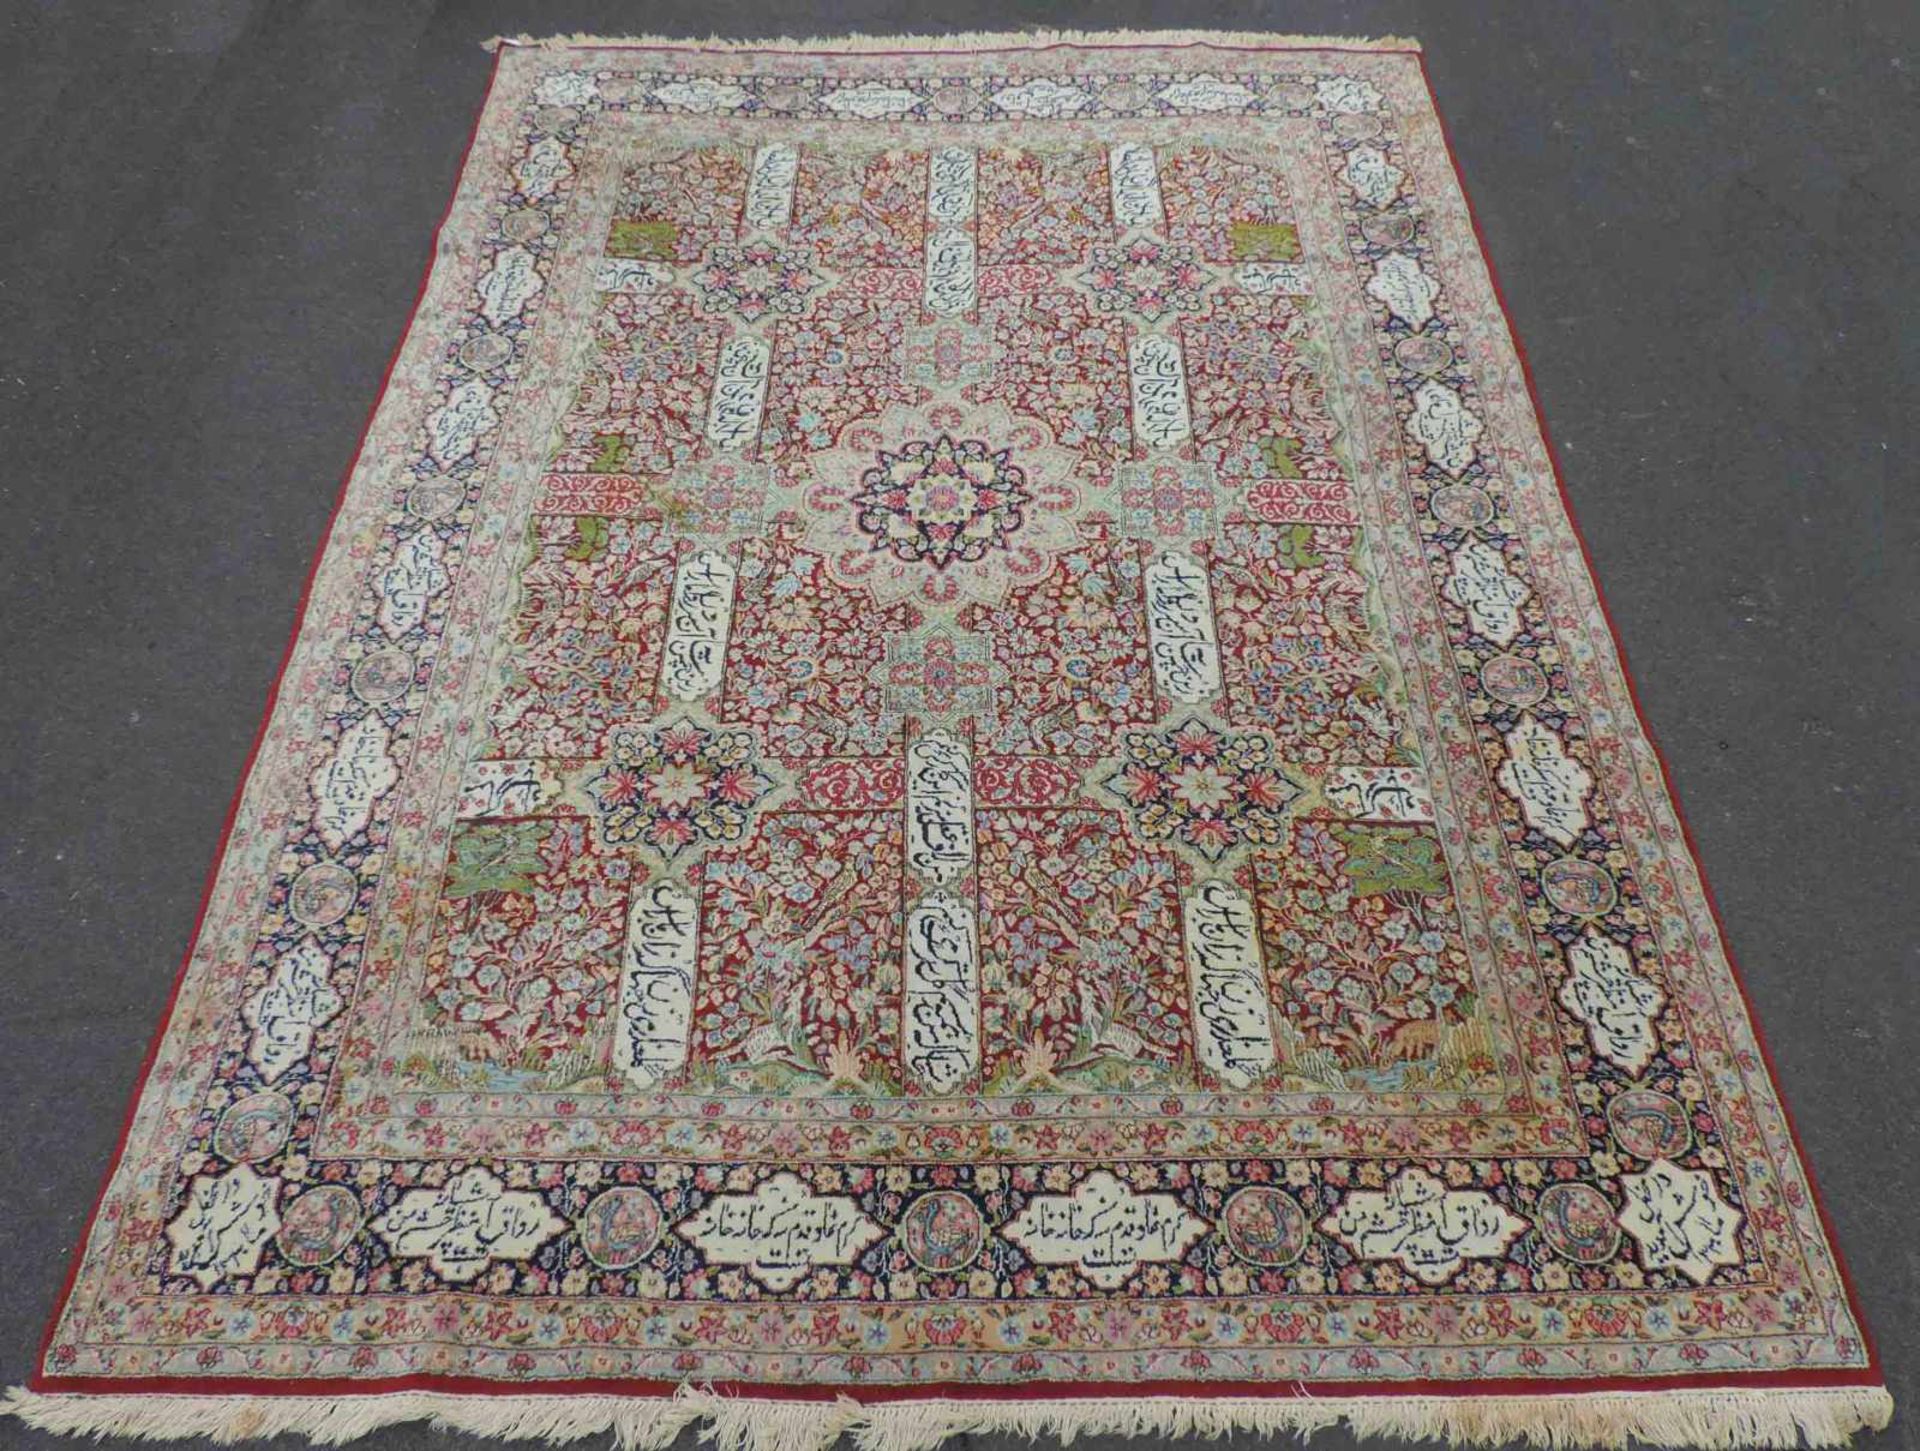 Kirman Garten - Teppich. Iran. Feine Knüpfung. Datiert 1390 (1972). 342 cm x 248 cm. Handgeknüpft.